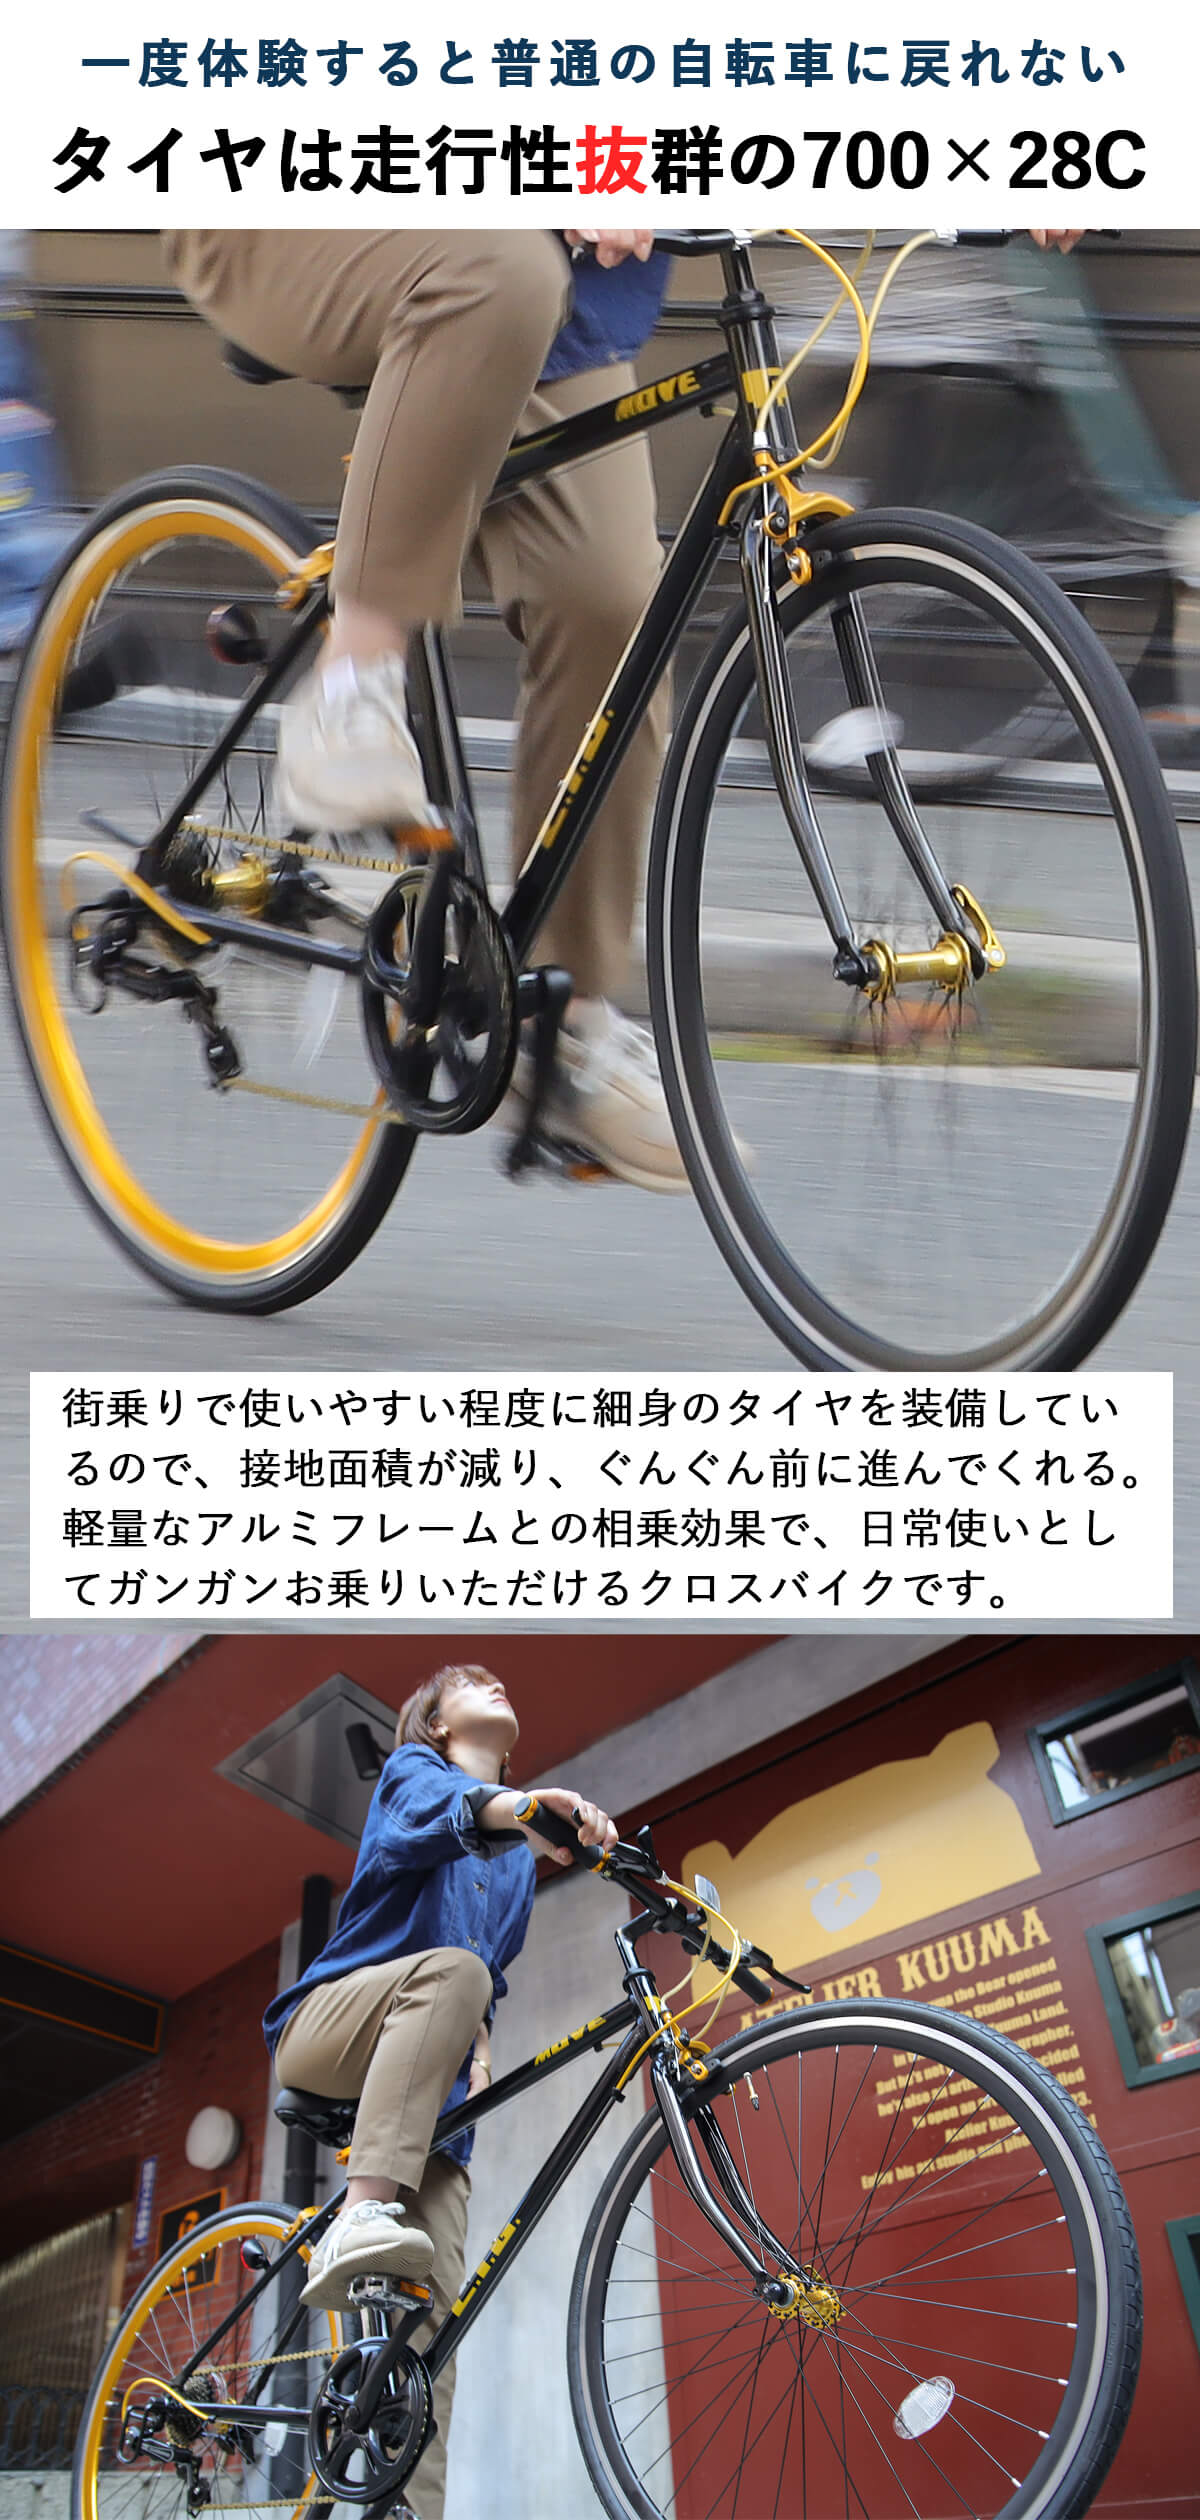 クロスバイク 自転車 700×28C シマノ7段変速 軽量 アルミフレーム 